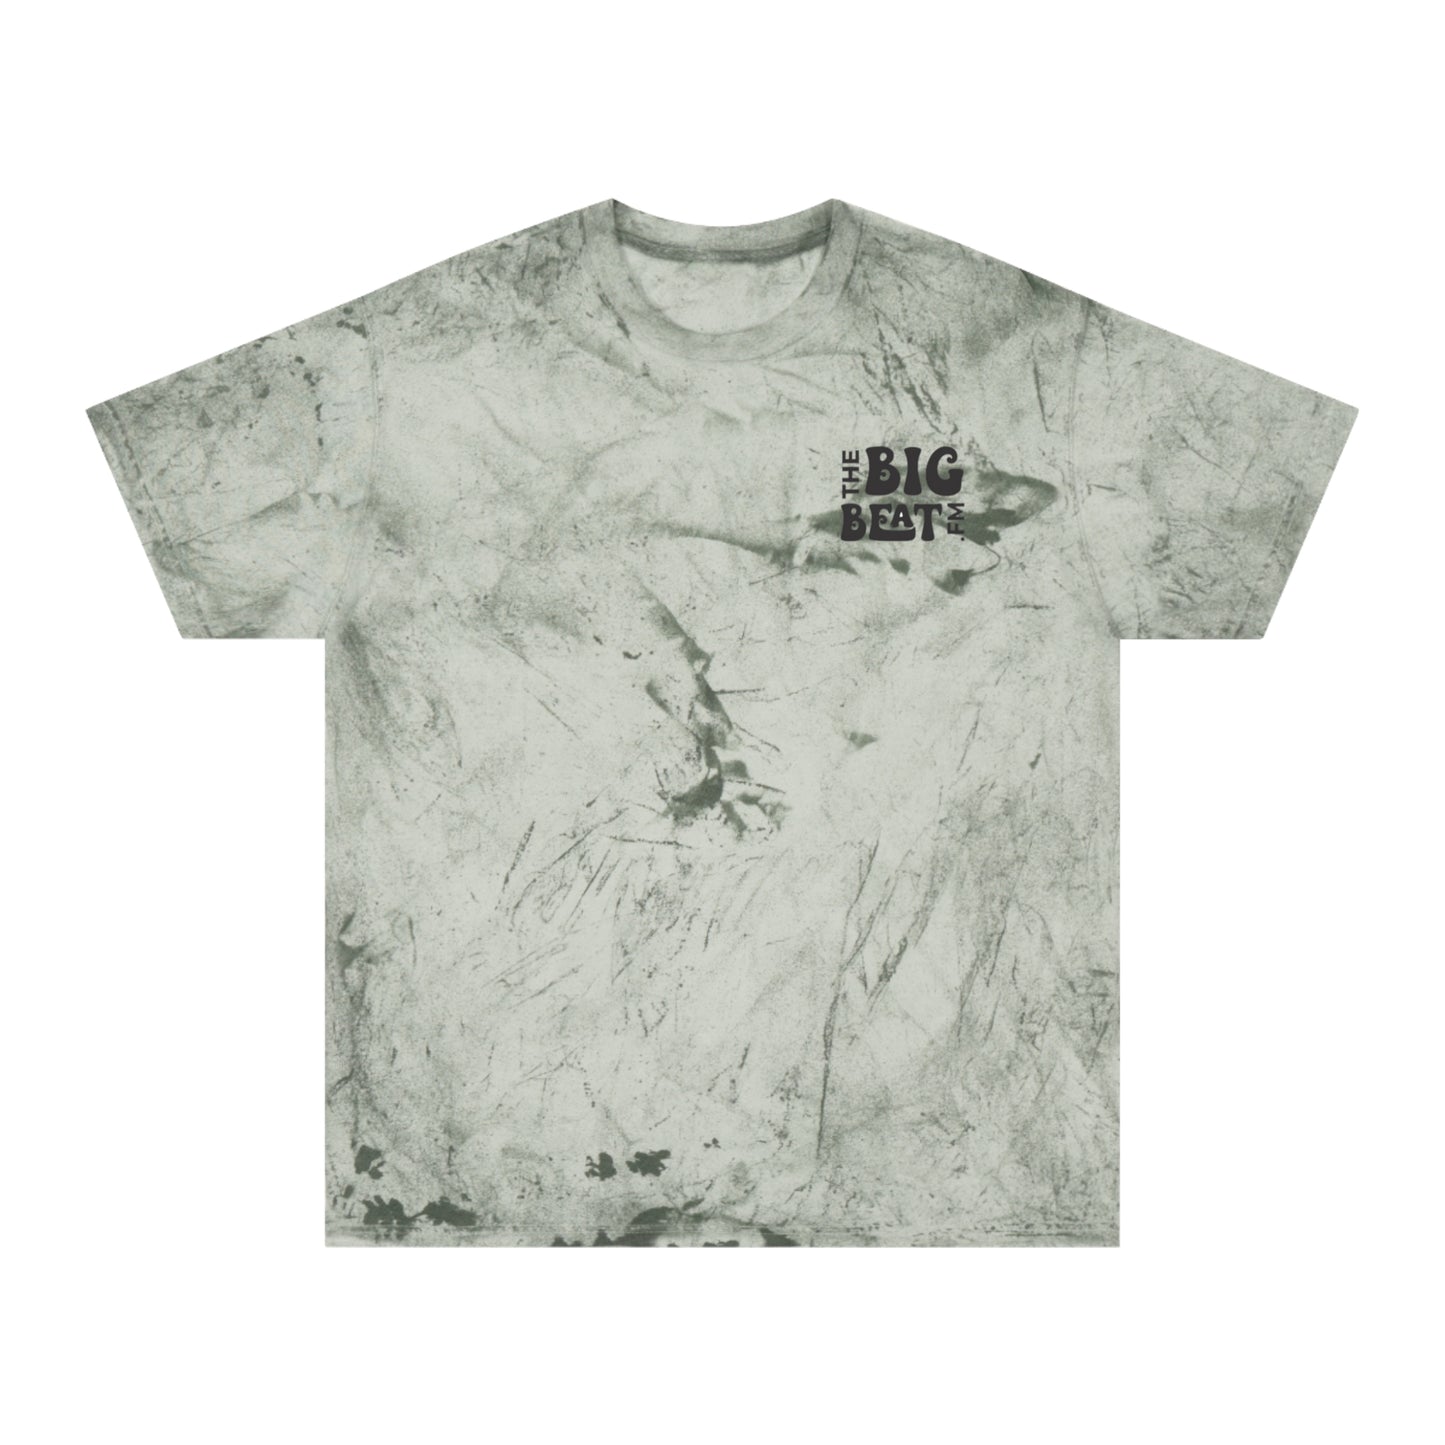 The Big Bea tFM Color Blast T-Shirt